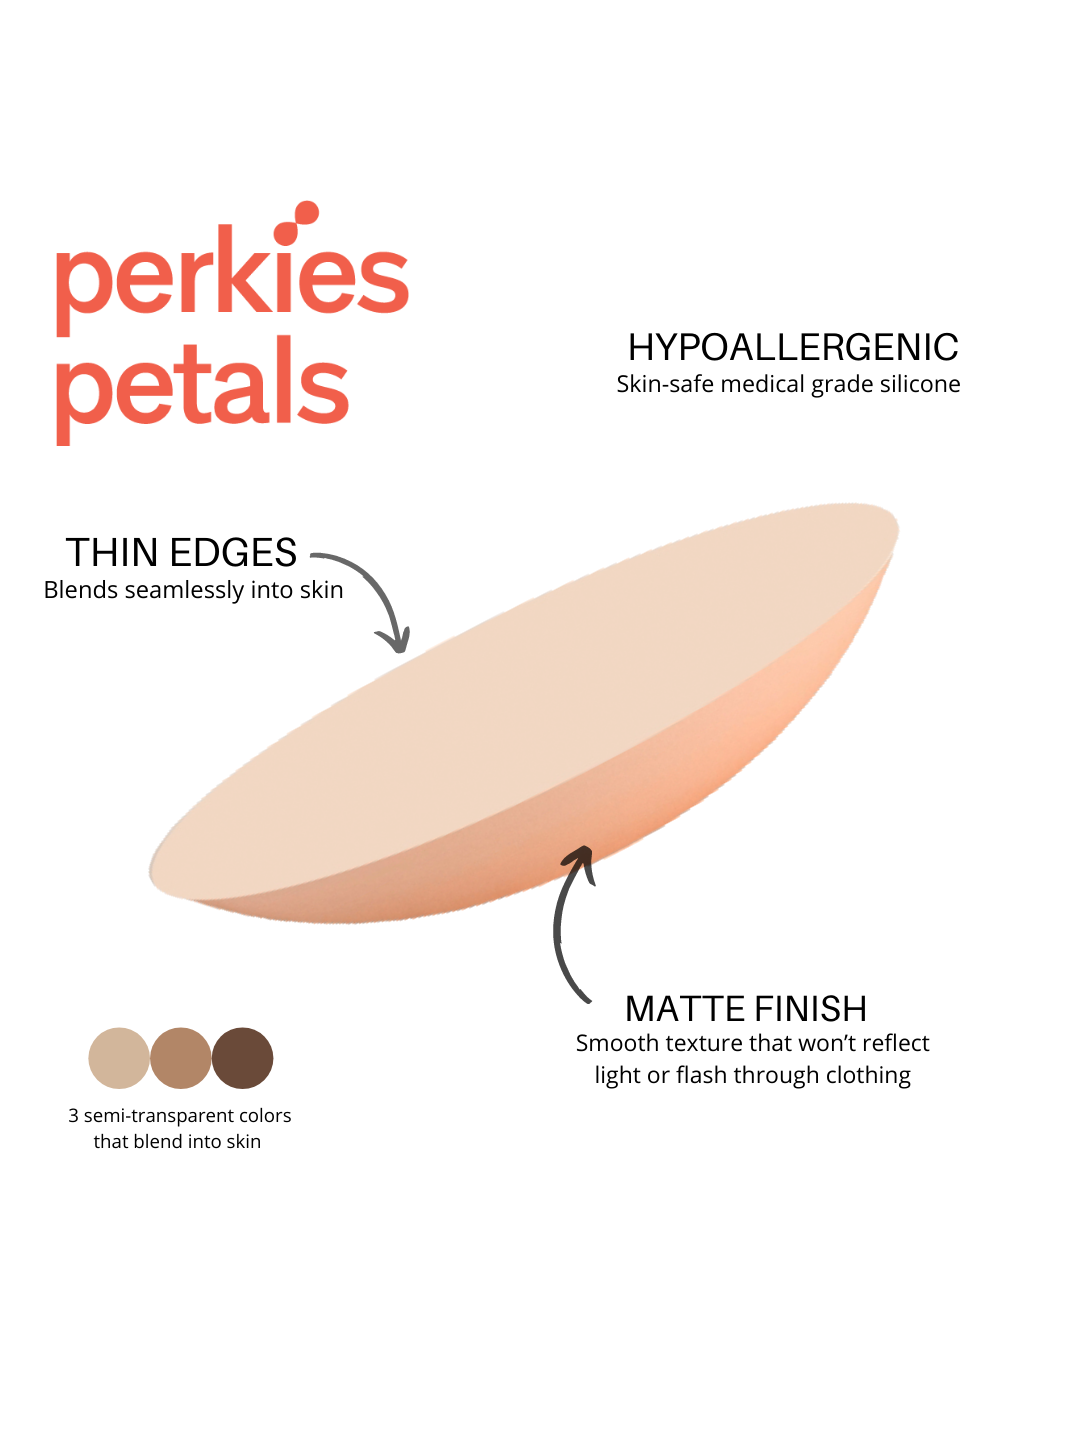 Perkies Petals: Nipple Covers by Perkies